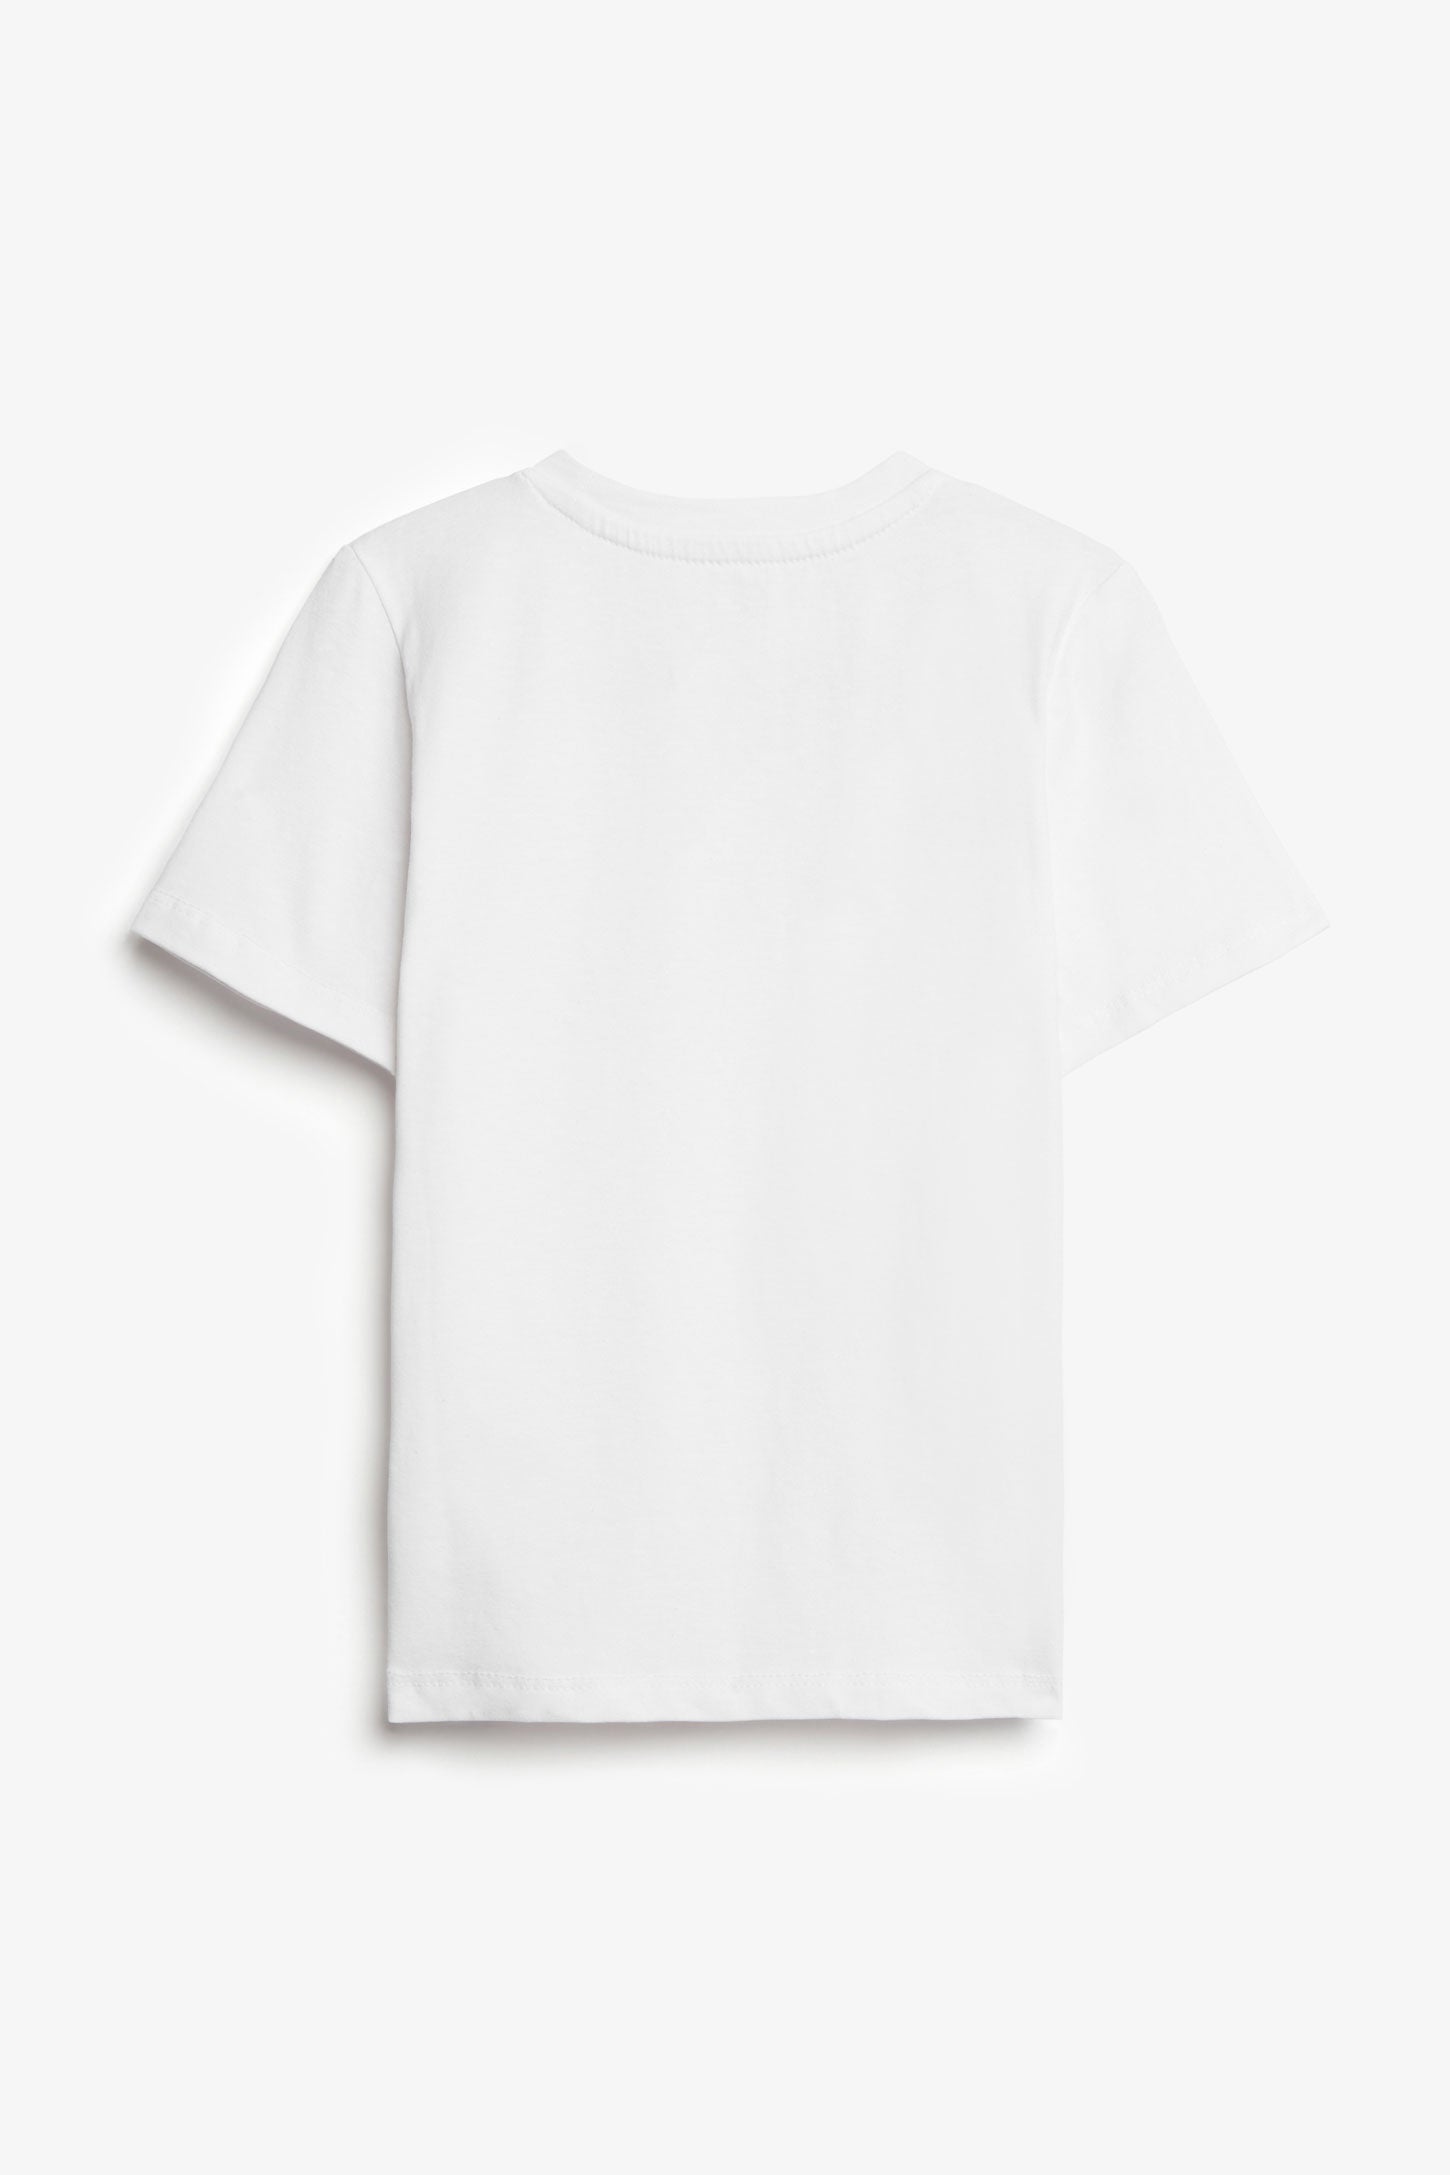 Duos futés, T-shirt à poche, 2/20$ - Enfant garçon && BLANC